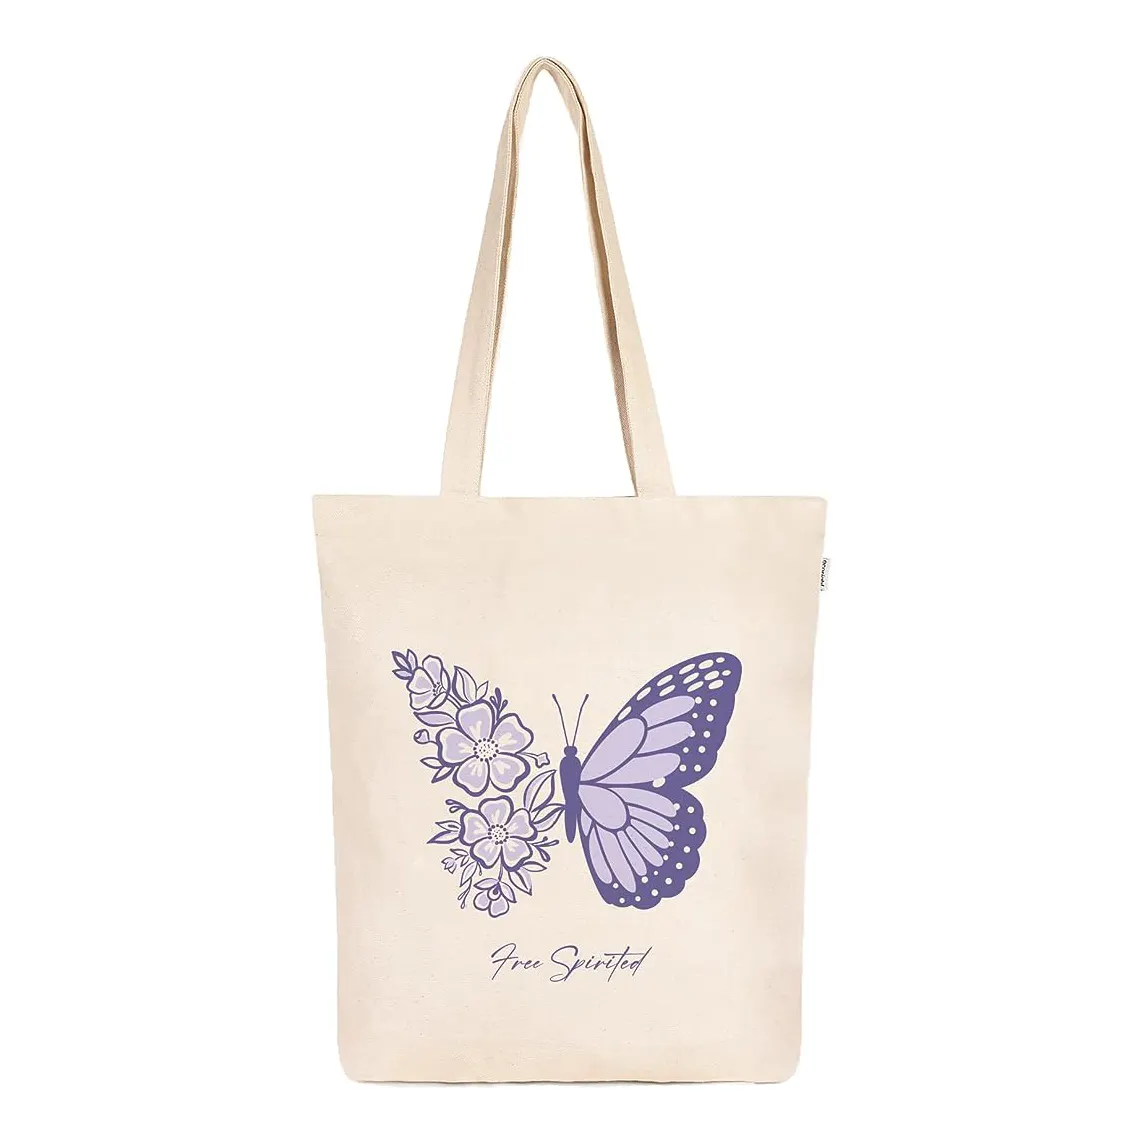 Tas jinjing untuk promosi belanja tas Tote katun organik daur ulang tas katun desain baru